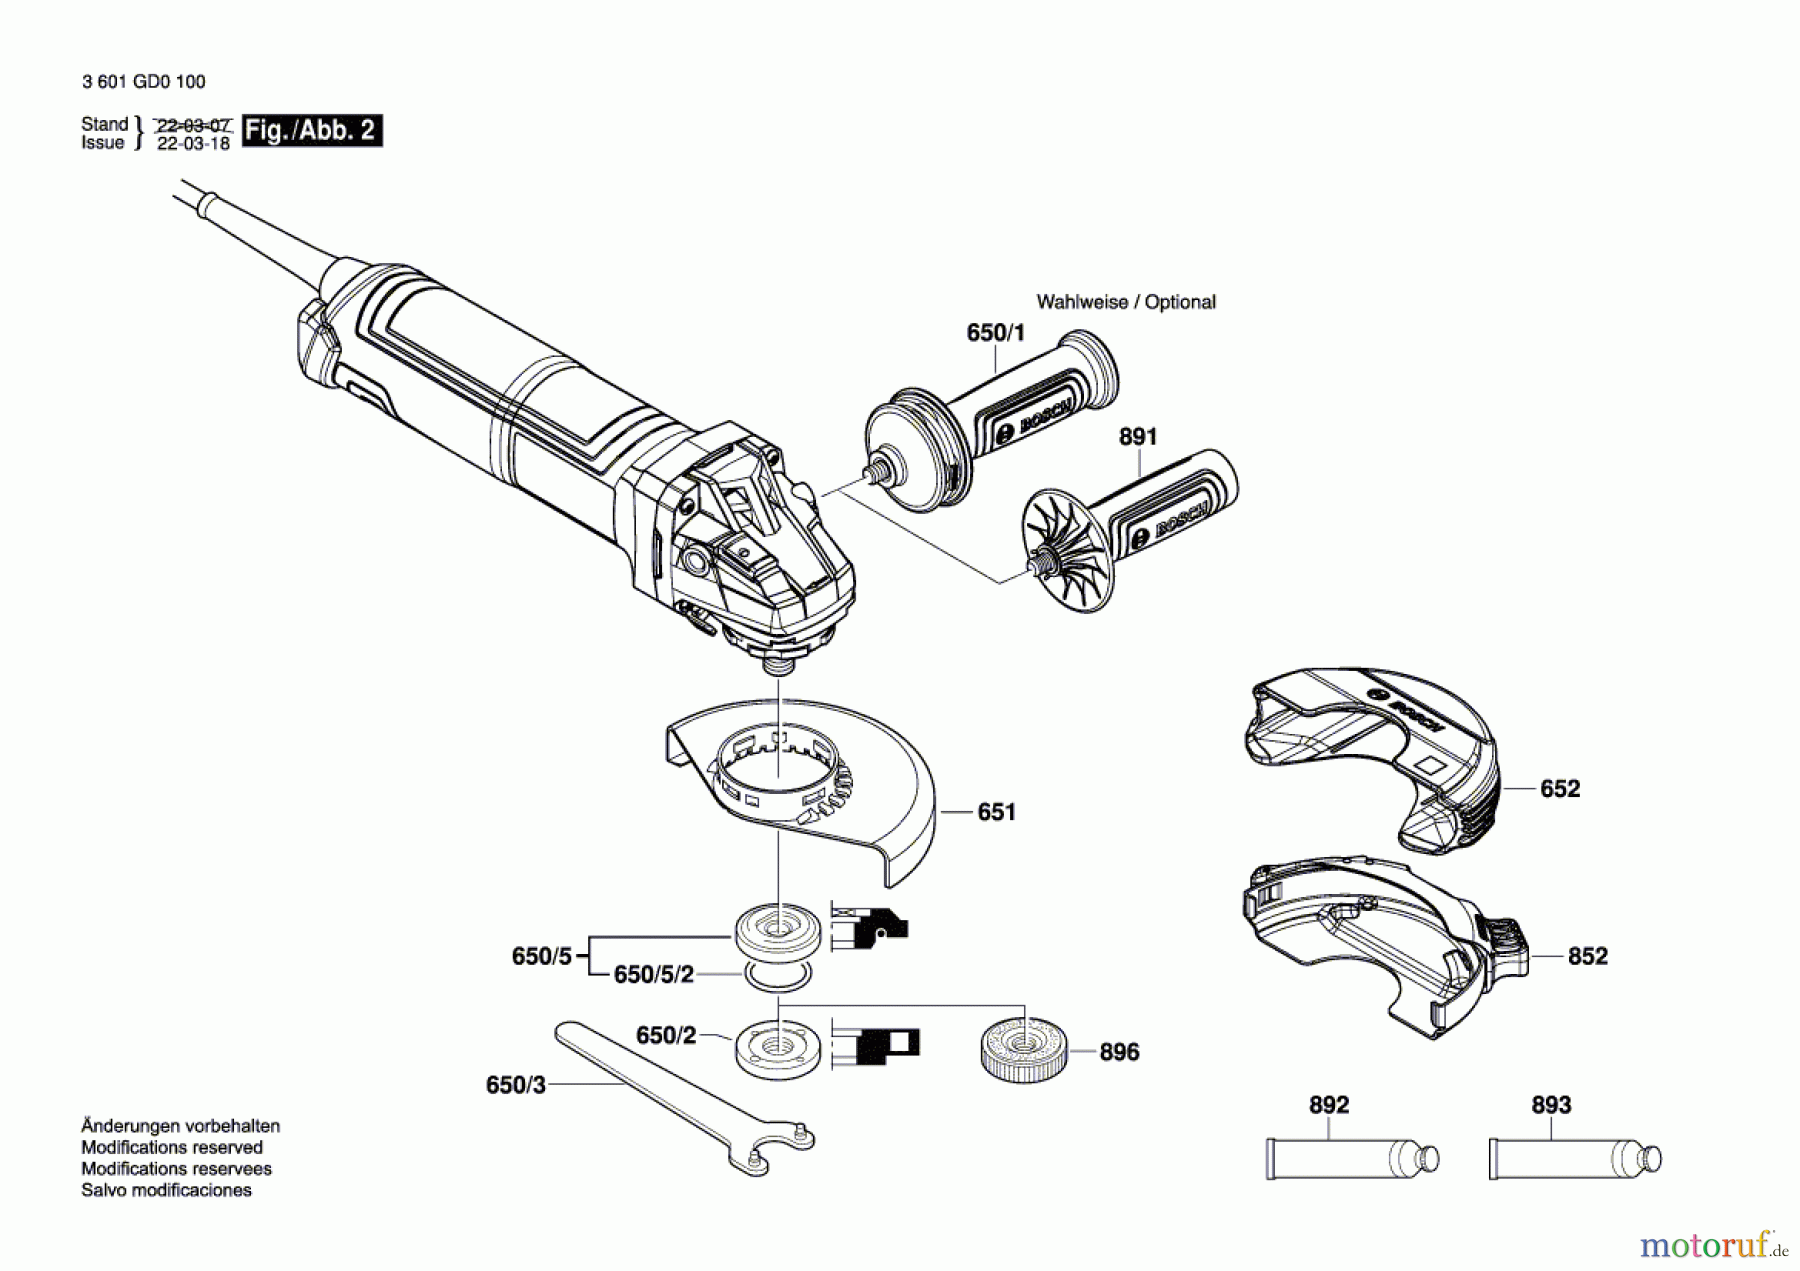  Bosch Werkzeug Winkelschleifer GWS 14-125 S Seite 2